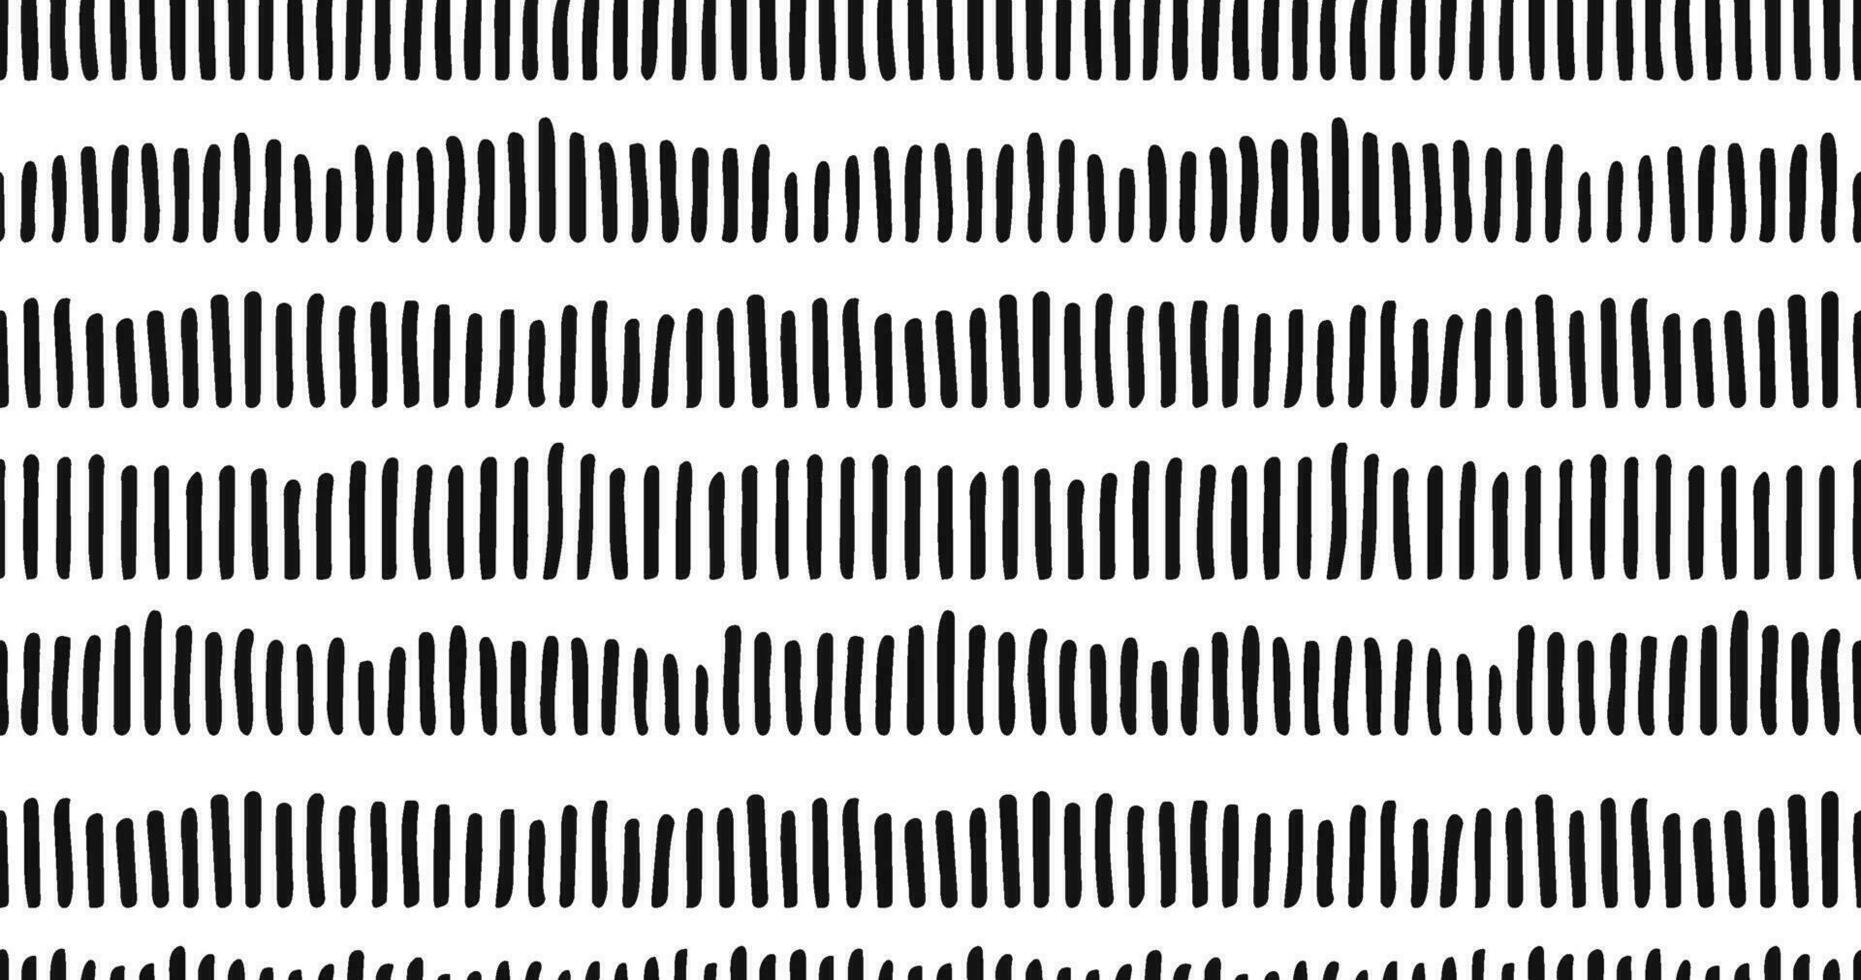 klein scheutje naadloos patroon stippel lijnen textuur. zwart en wit uitkomen tekening biologisch vormen kort lijn streepjes borstel hand- getrokken willekeurig beroertes mode retro afdrukken ontwerp vector illustratie